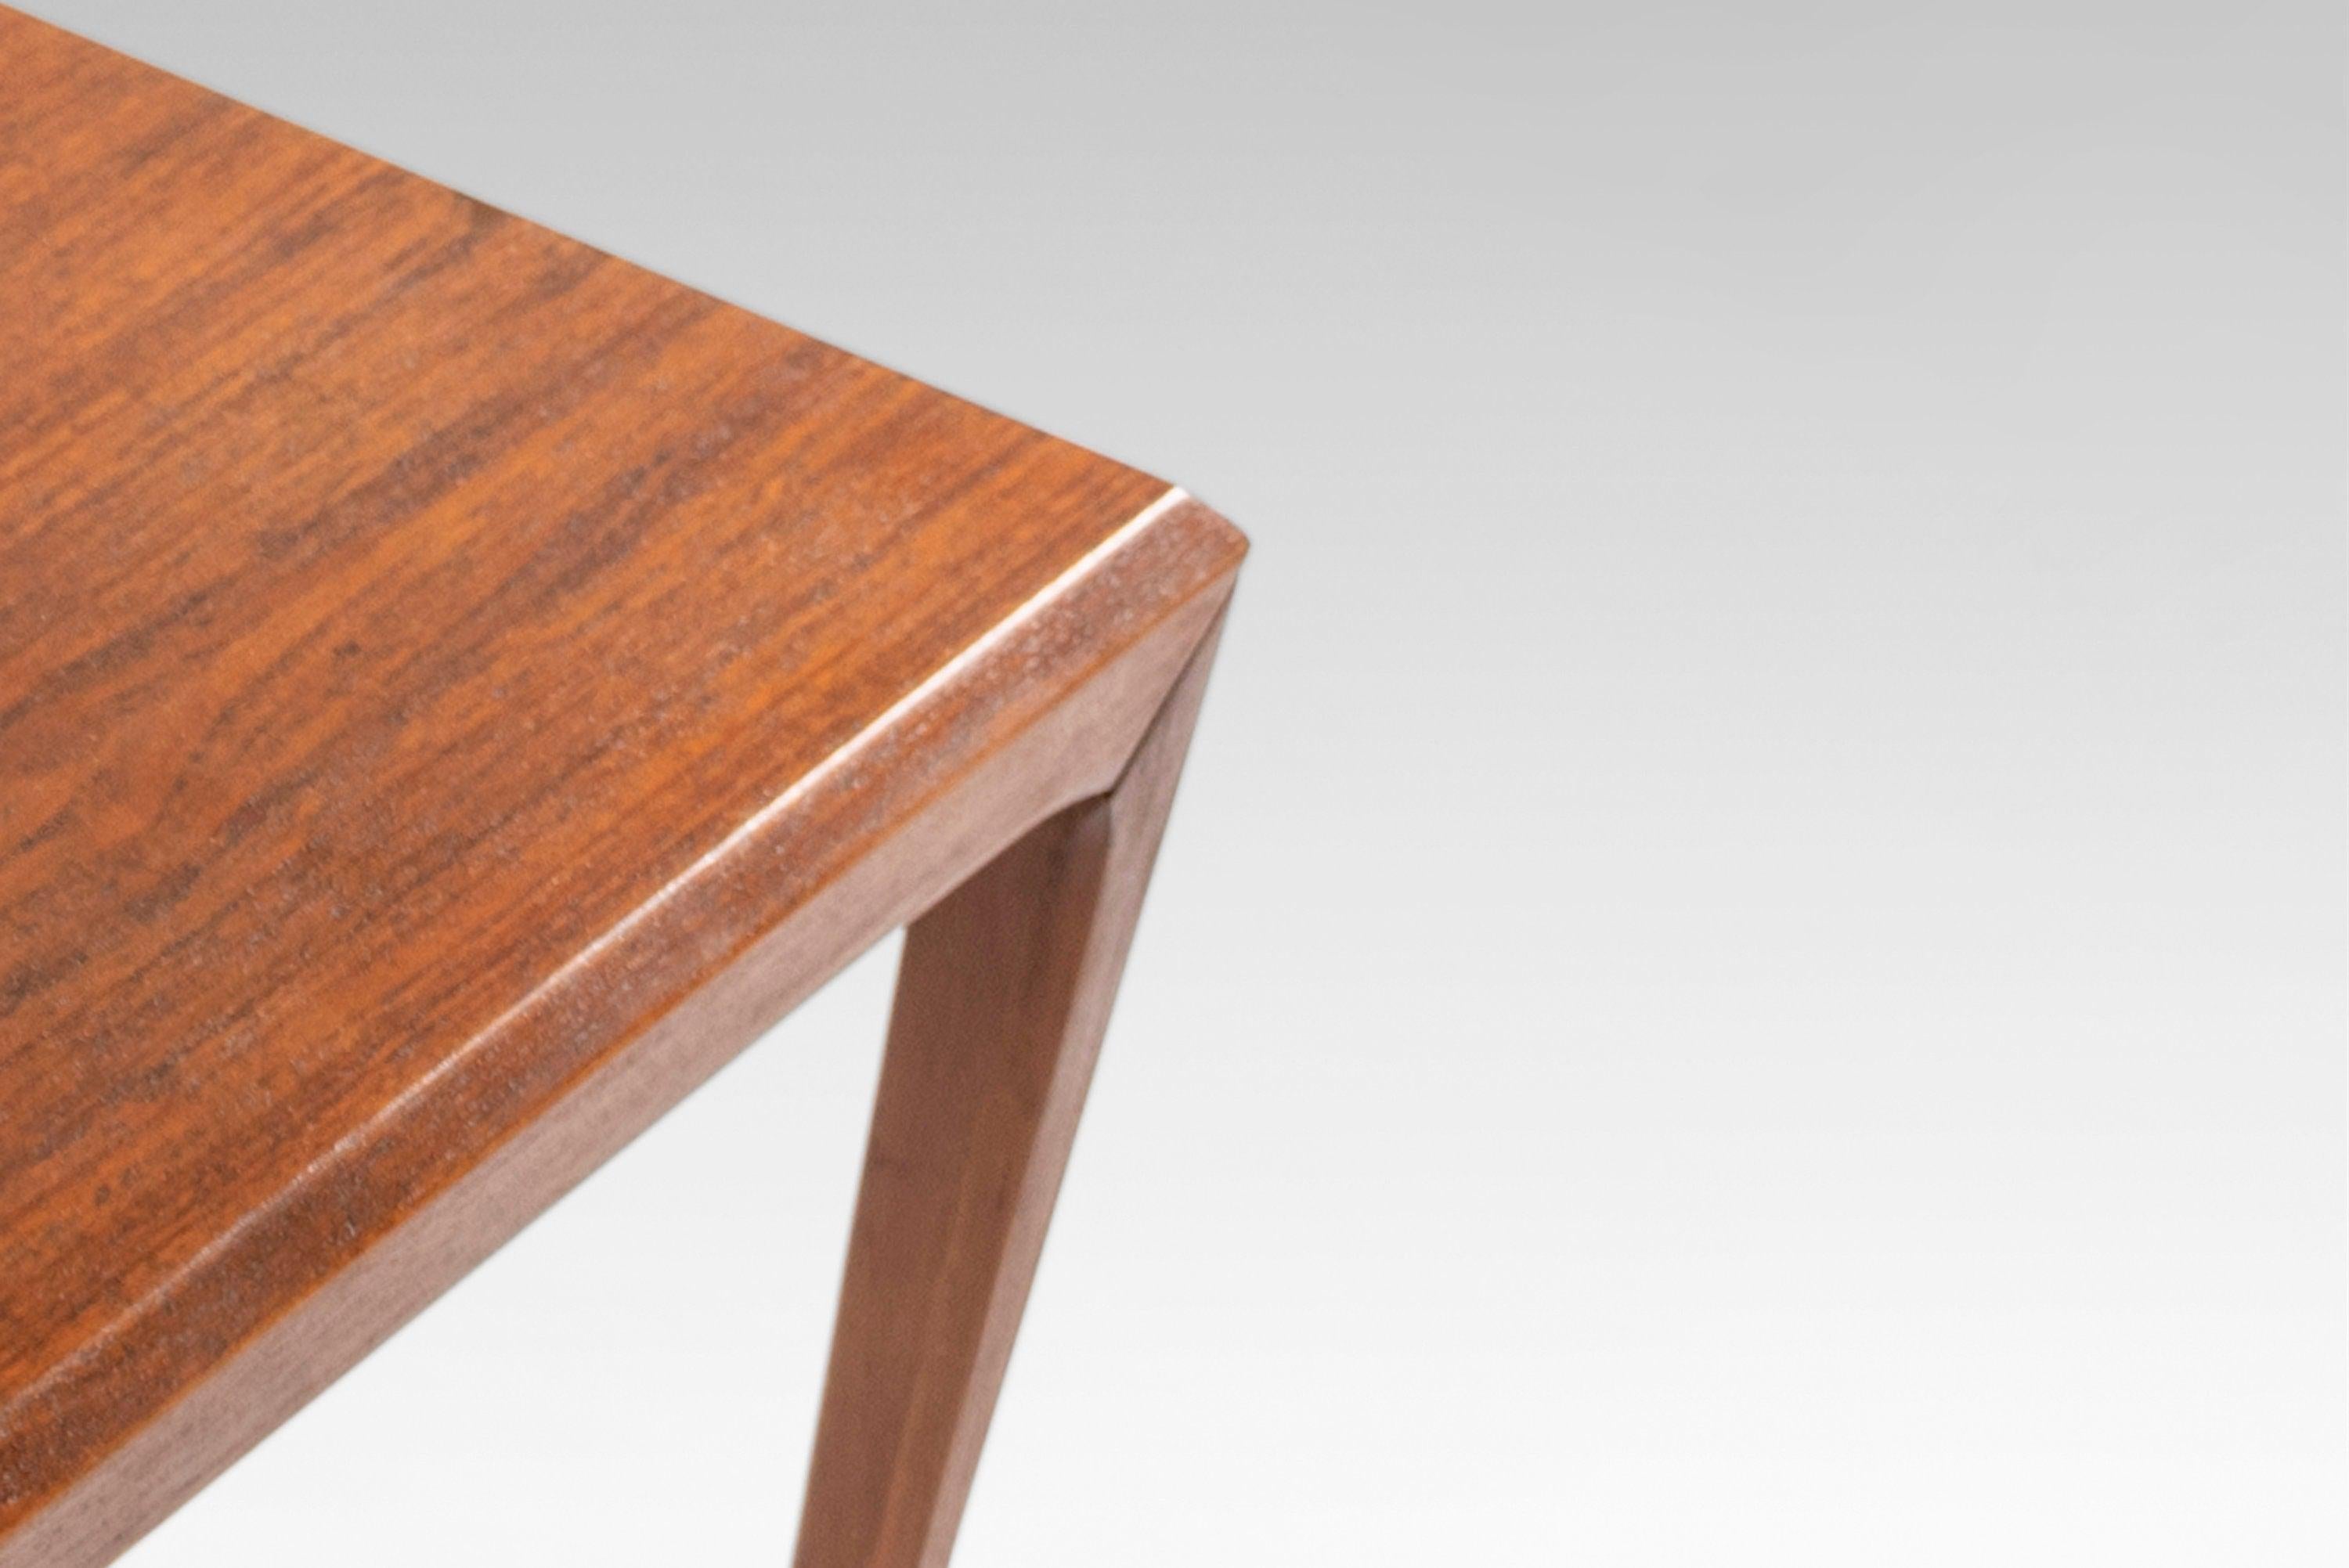 Hergestellt aus massivem Teakholz und Teakholzfurnier für die Tischplatte hat dieses exquisite Design einzigartige, sich verjüngende Beine, die mit der Tischkante abschließen. Schlichtheit mit Absicht macht dieses Design zu einem der Favoriten von